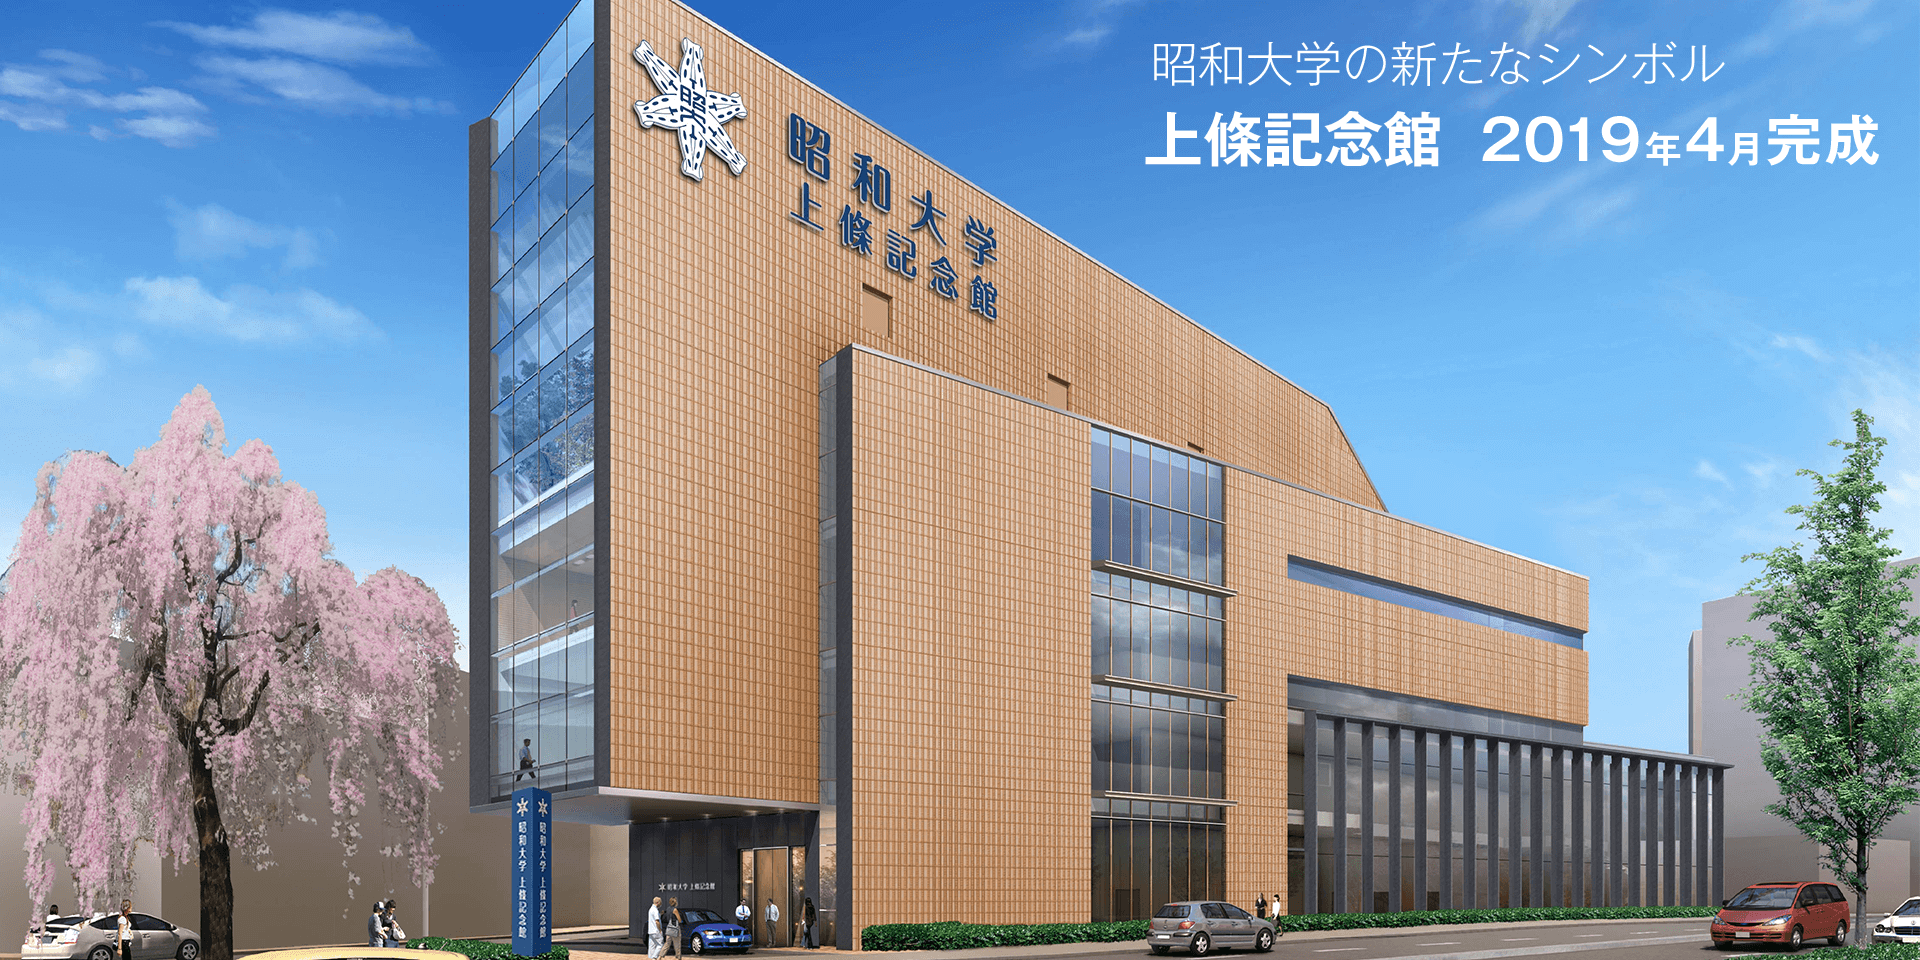 昭和大学の新たなシンボル 上條記念館 2019年4月完成